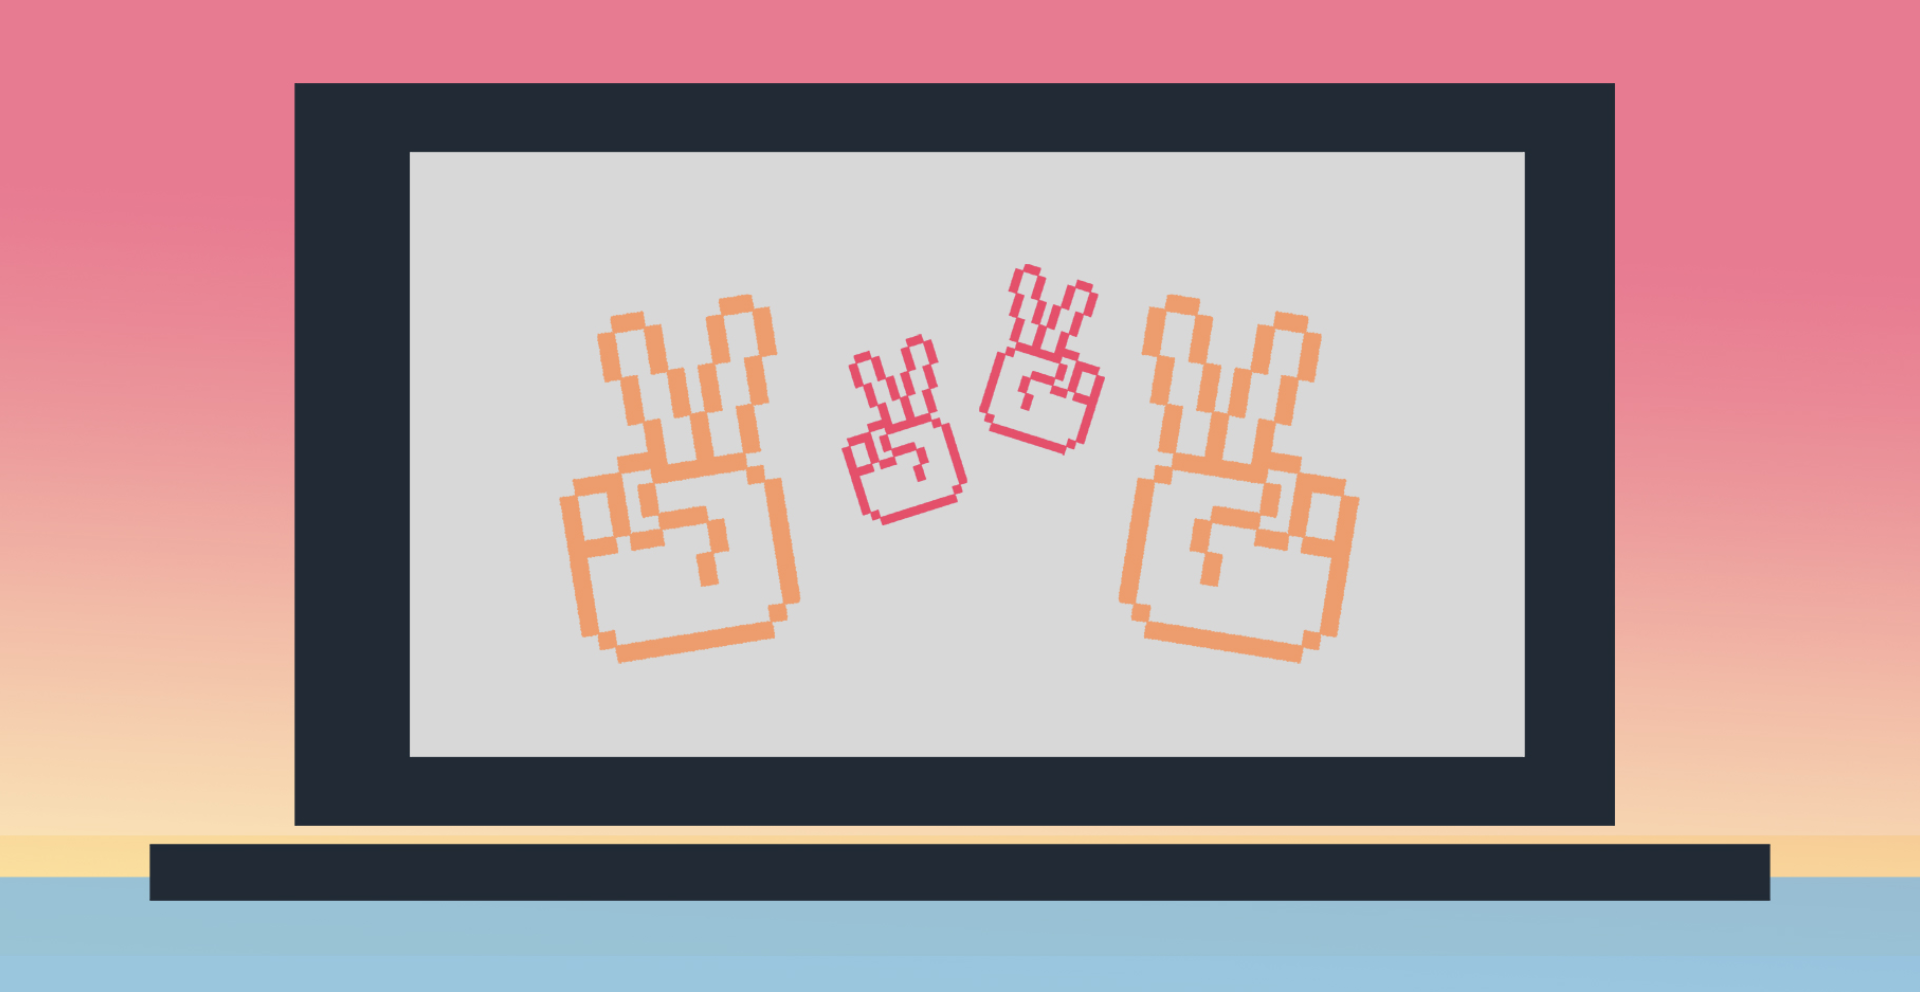 Dator med händer som gör peace-tecken på skärmen